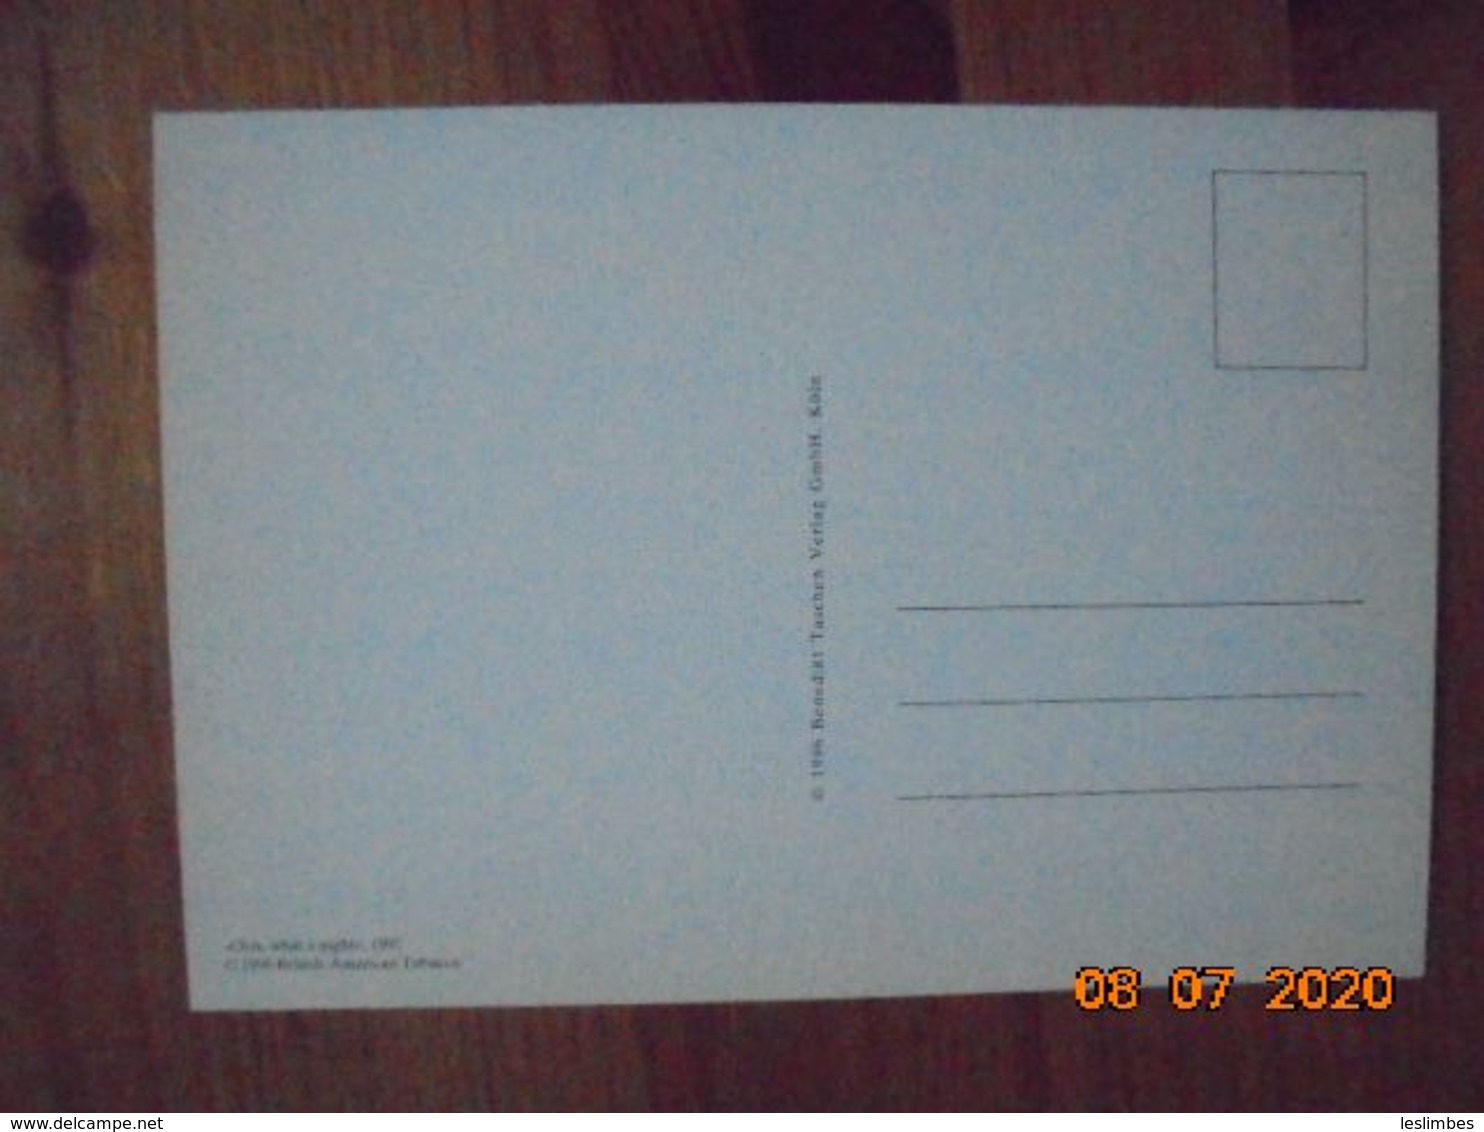 Carte Postale Publicitaire Allemand (Taschen 1996) 16,3 X 11,4 Cm. Lucky Strike. Sonst Nichts. "Ooh, What A Night" 1991 - Werbeartikel